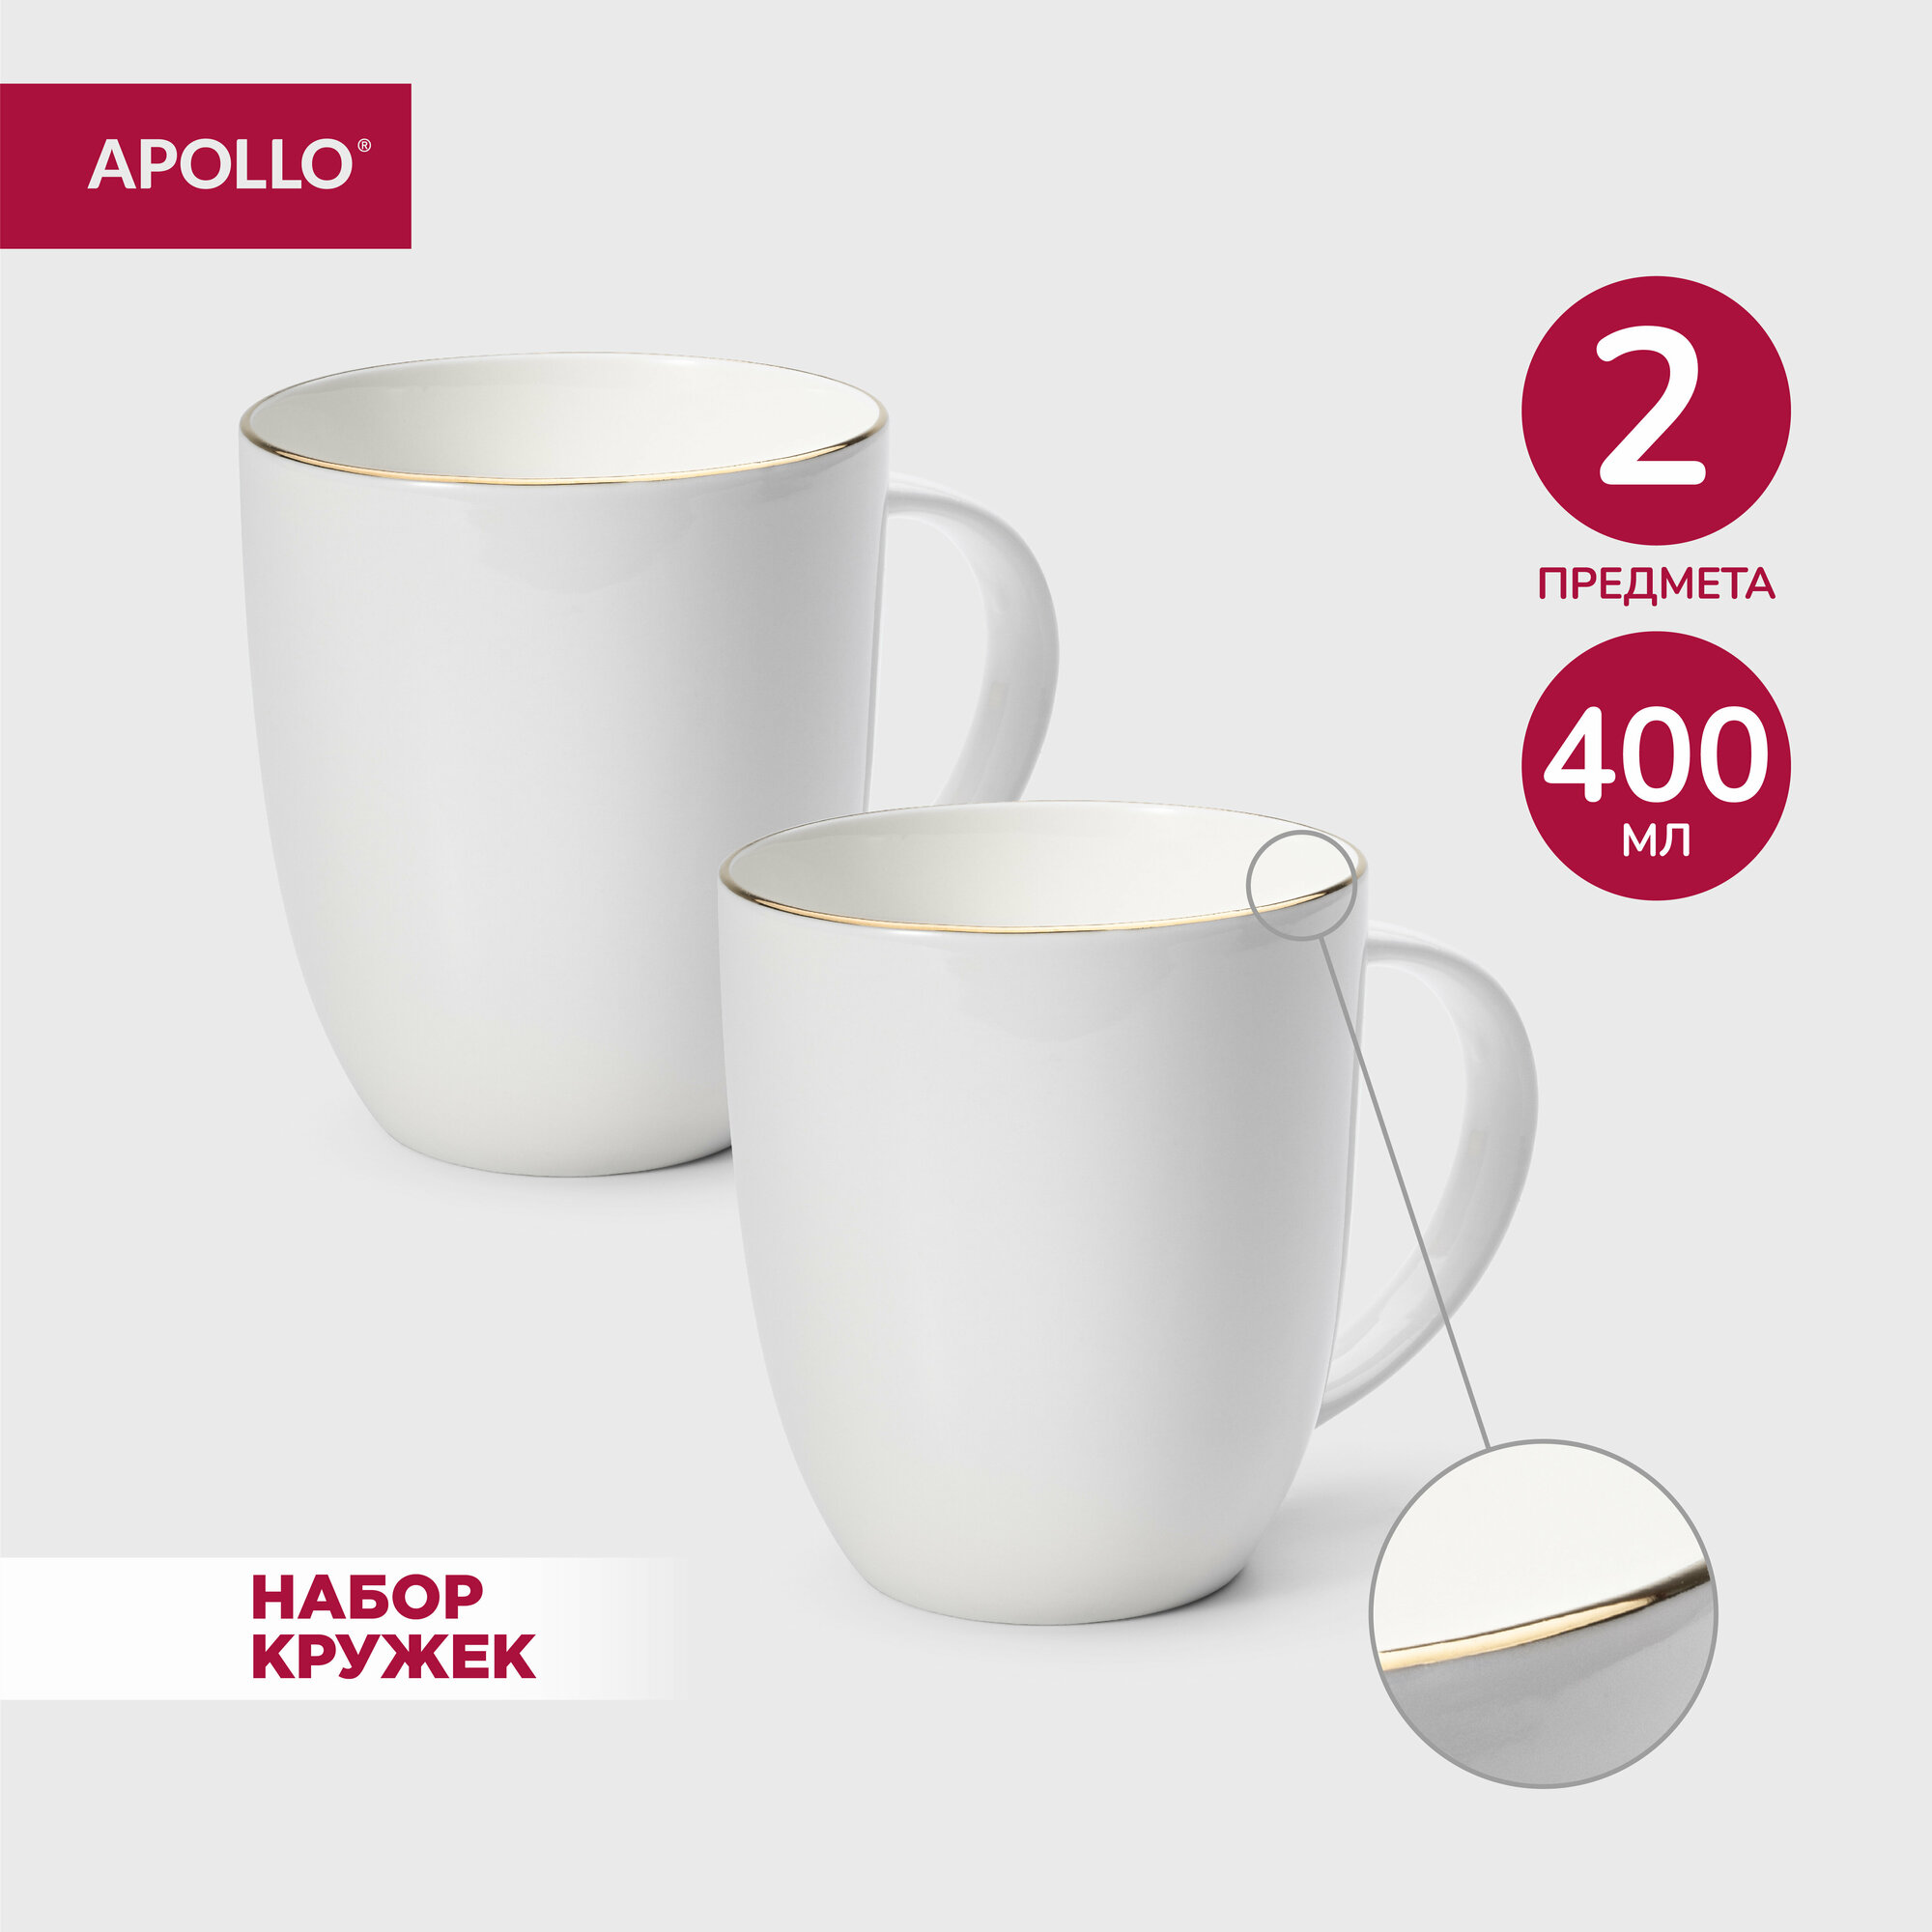 Кружки фарфоровые набор чашек для чая и кофе APOLLO 